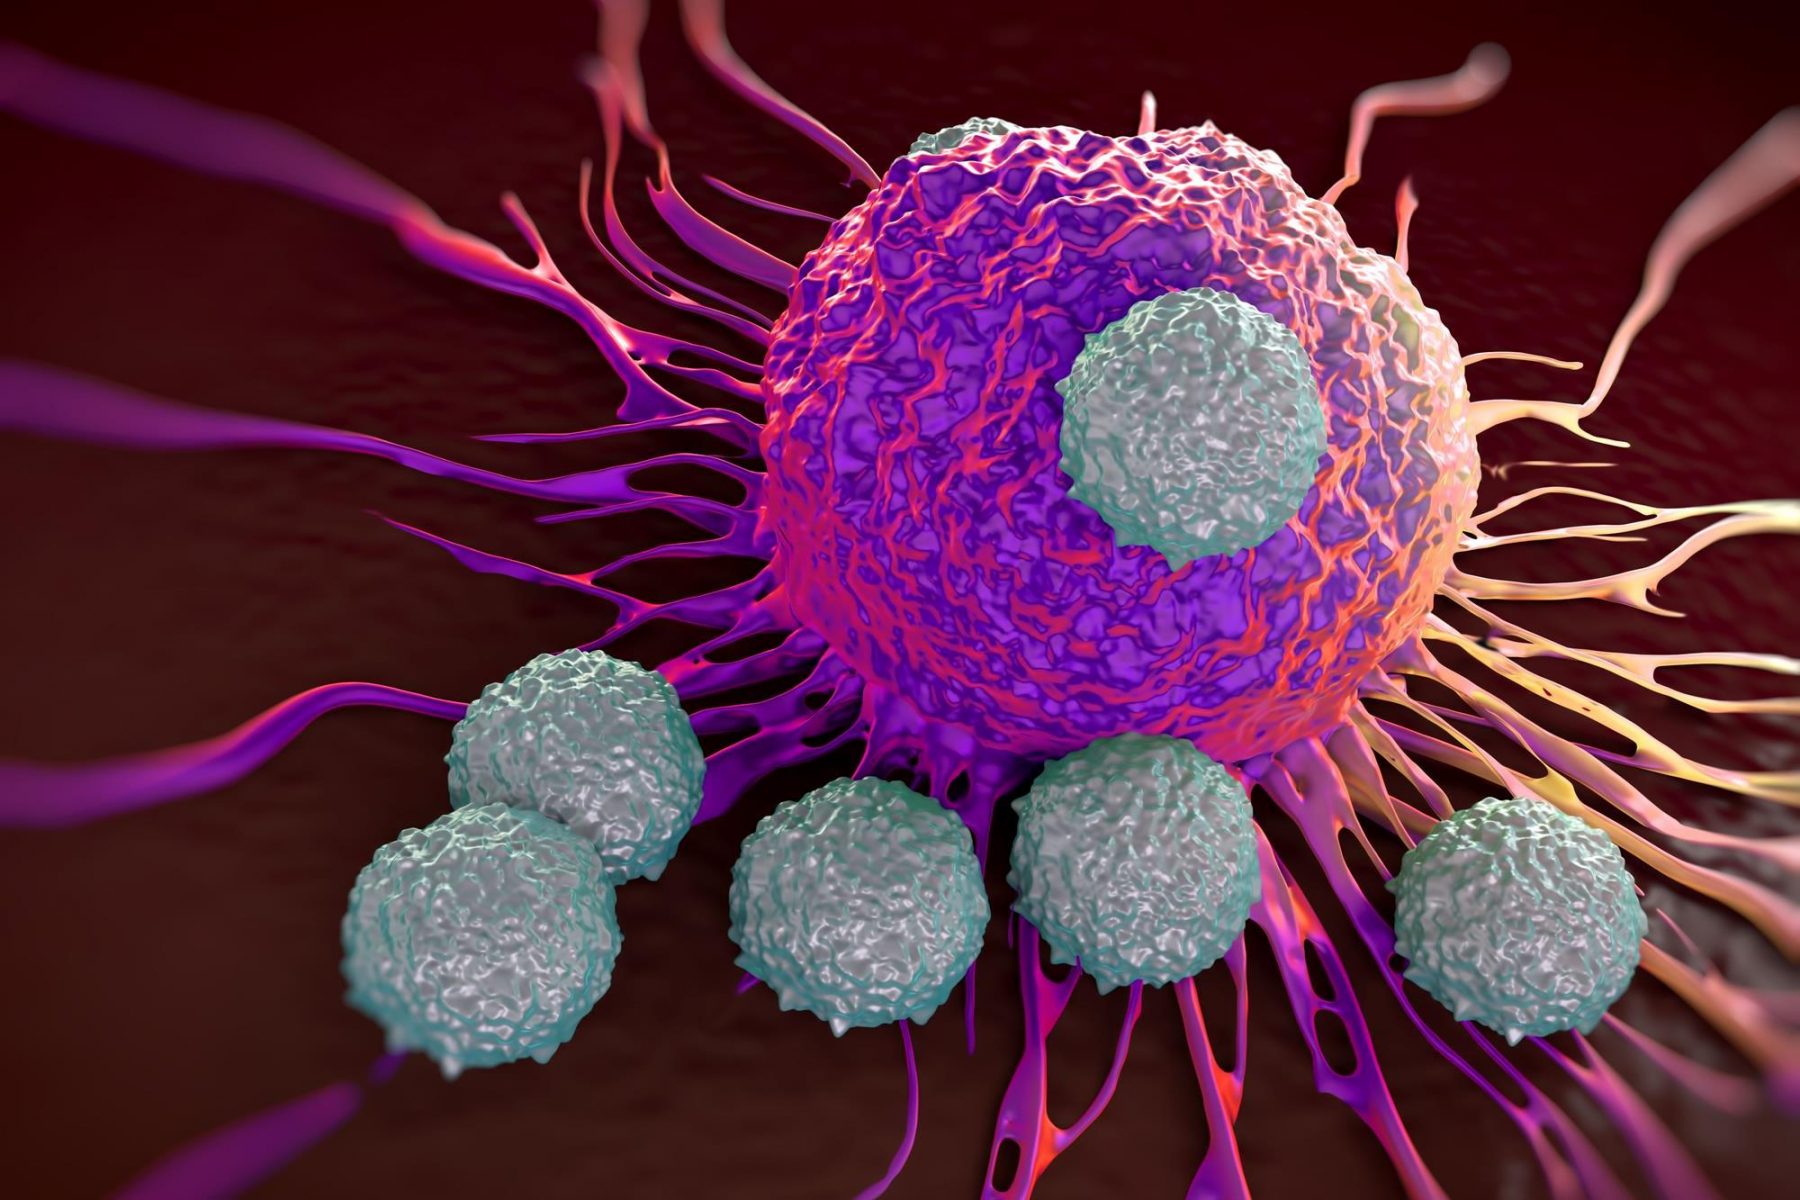 Θεραπευτικοί ιοί: Βοηθούν στην ενίσχυση του ανοσοποιητικού συστήματος κατά του καρκίνου